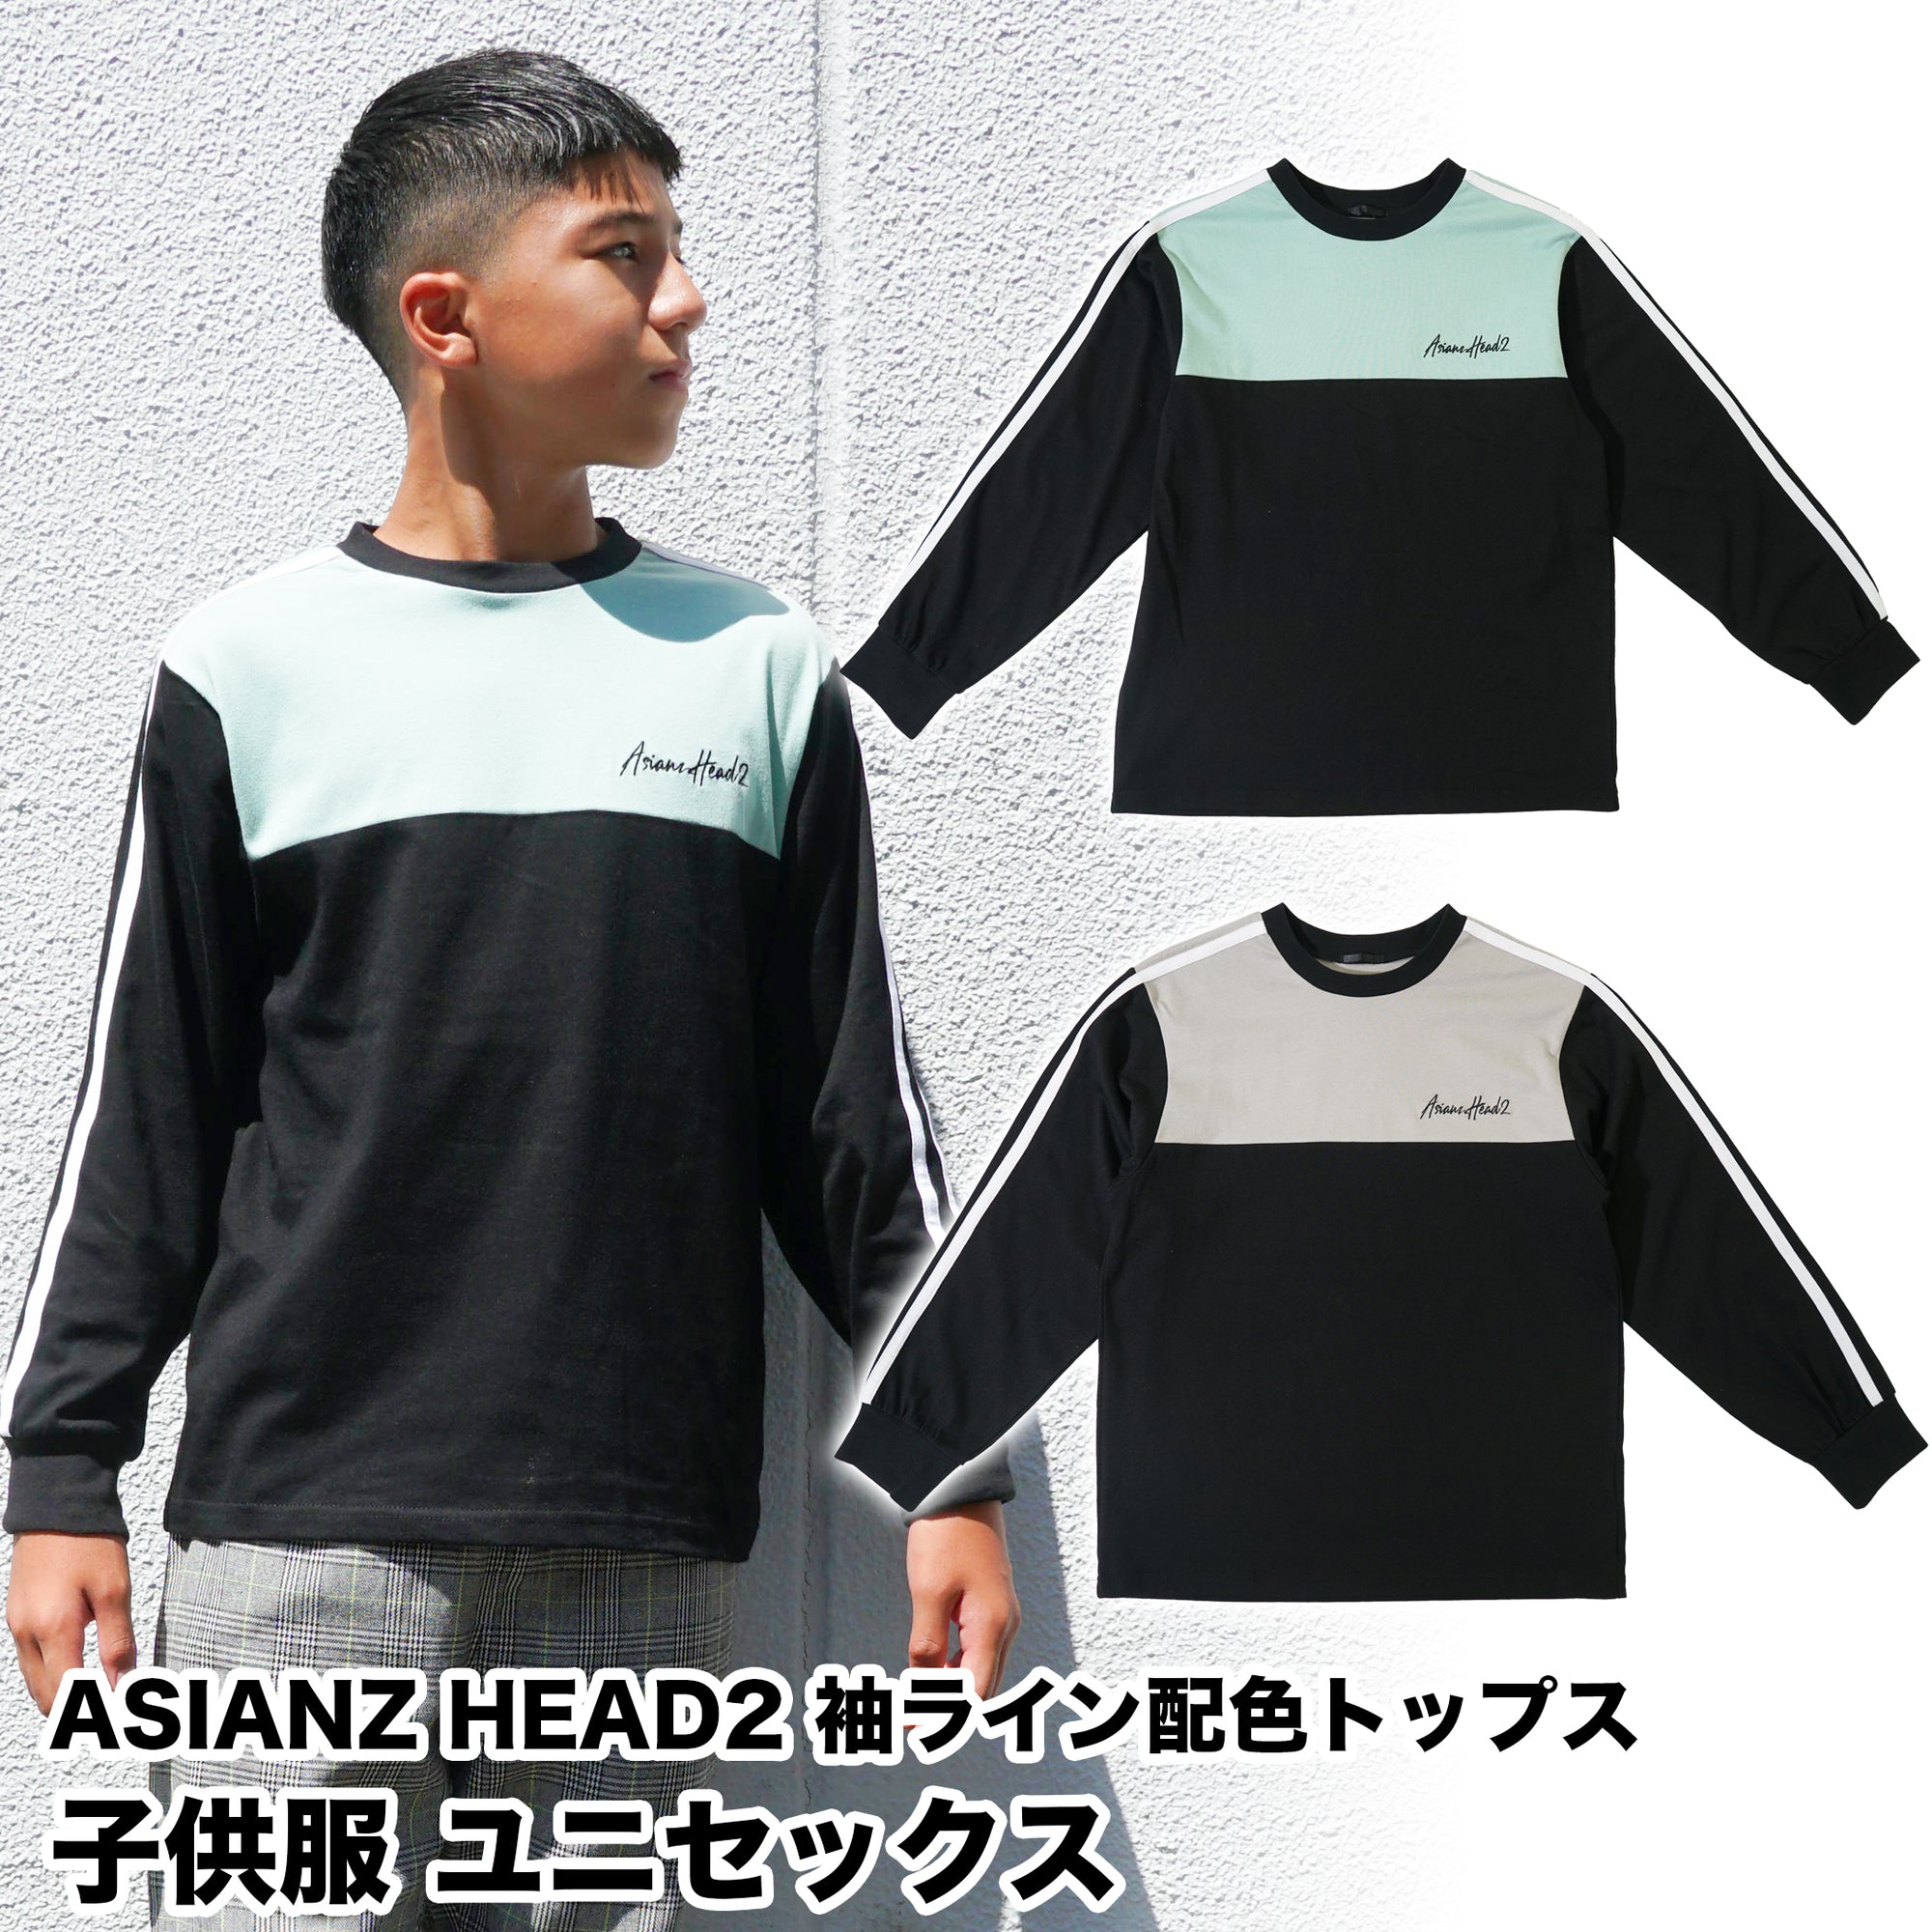 (セール商品) ASIANZ HEAD2 袖ライン配色トップス キッズウェアー